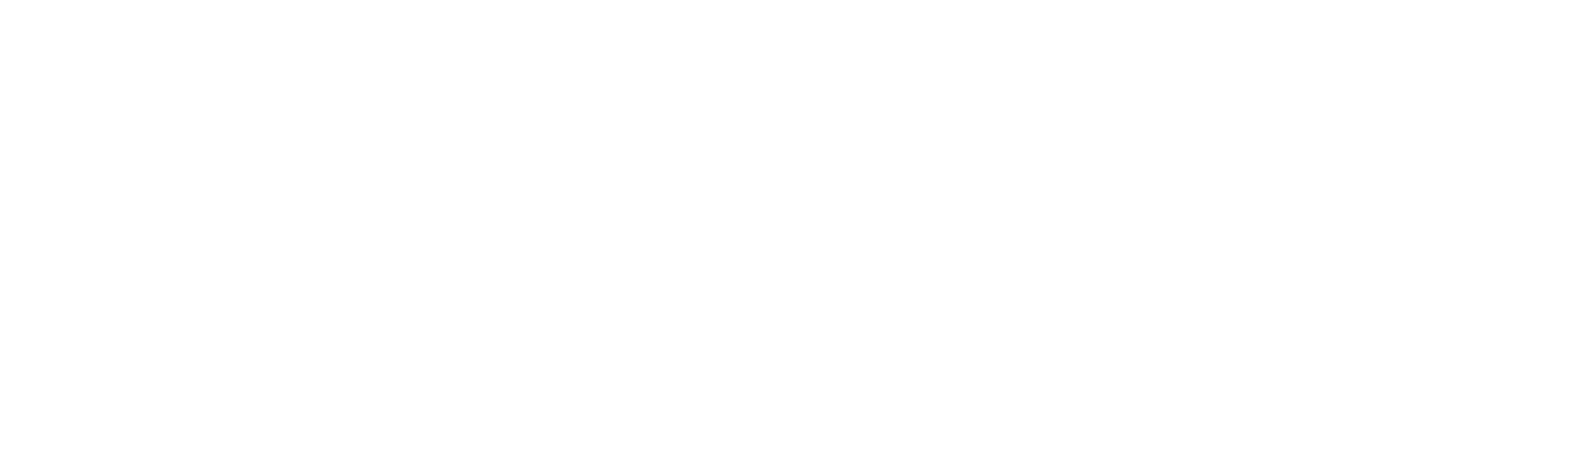 Rockley Photonics logo large for dark backgrounds (transparent PNG)